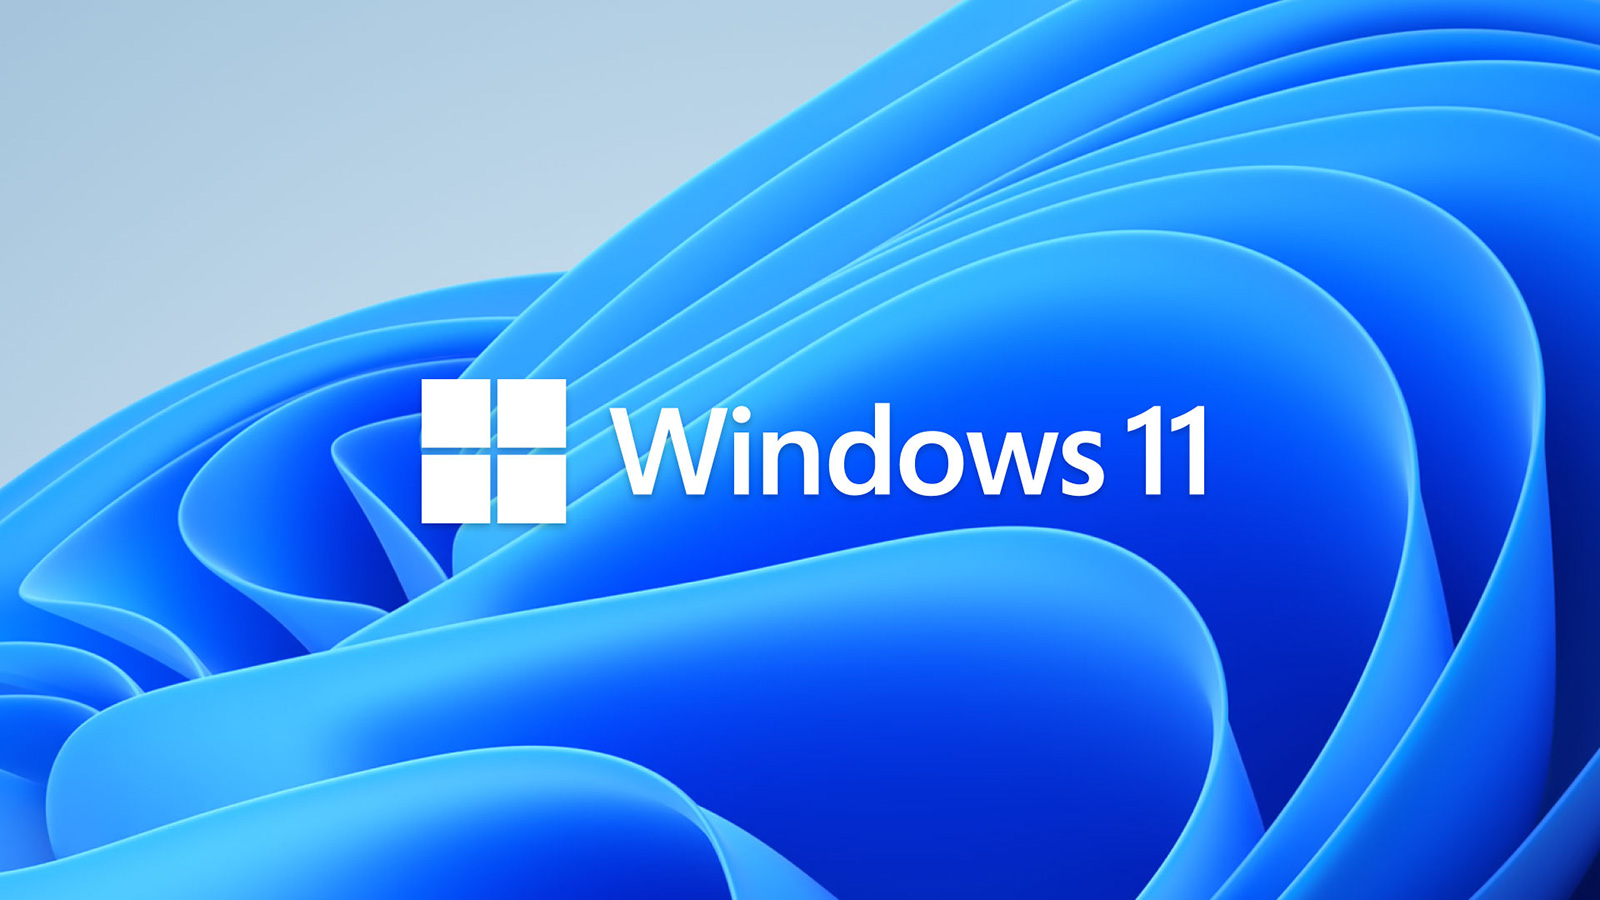 Windows 11 стала бесплатно доступна для пользователей во всем мире